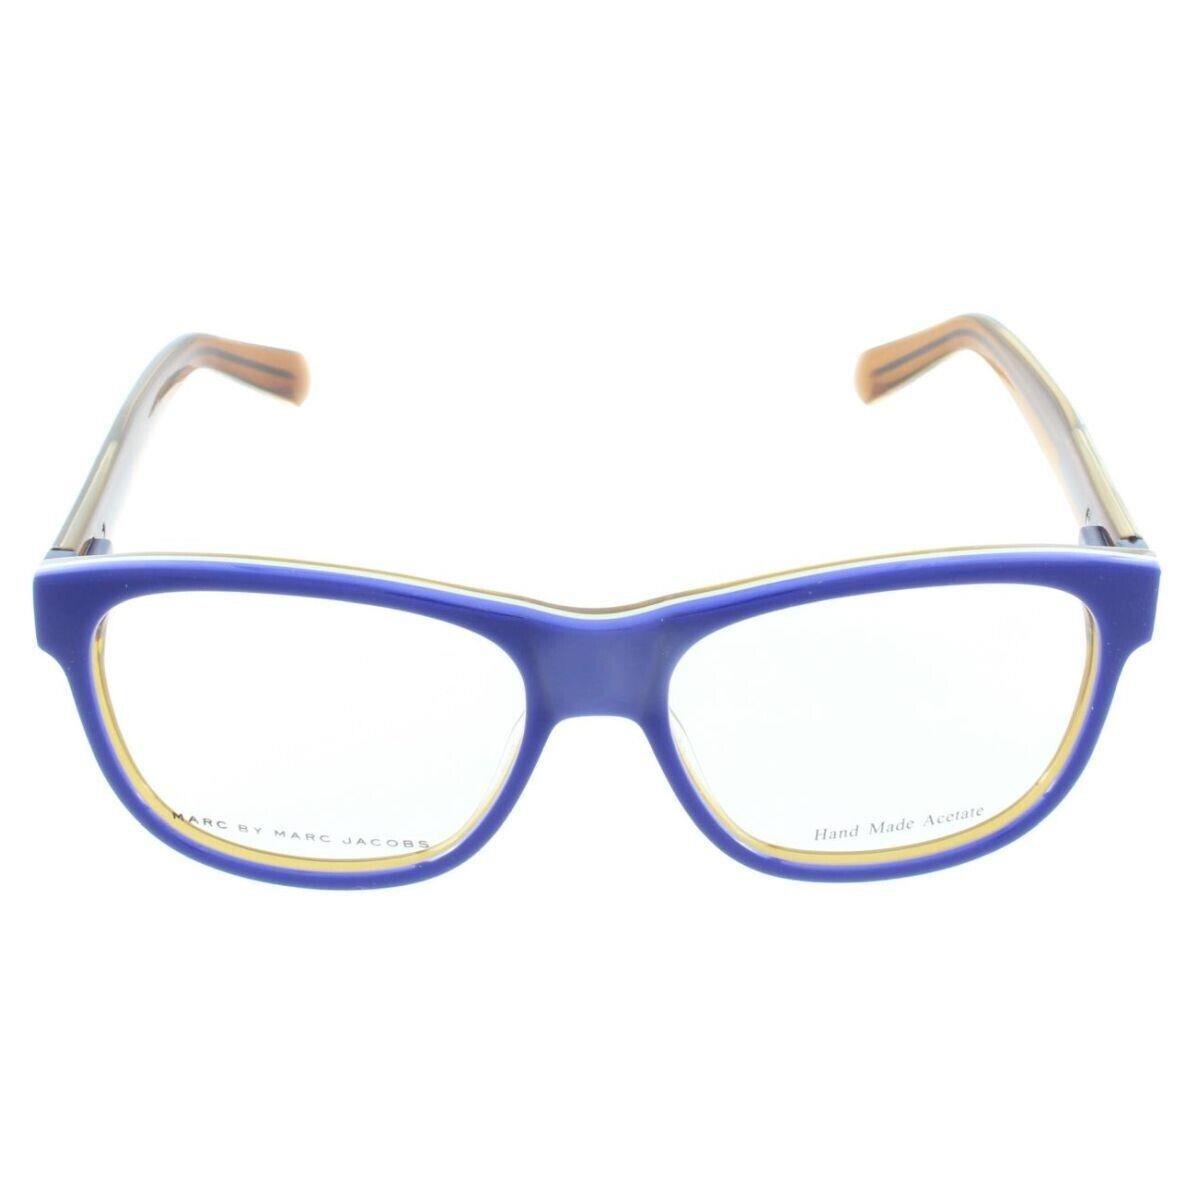 Marc By Marc Jacobs MMJ587 Flt Blue Eyeglasses Frame 52-15-140 Store Display - Blue, Frame: Blue, Lens: